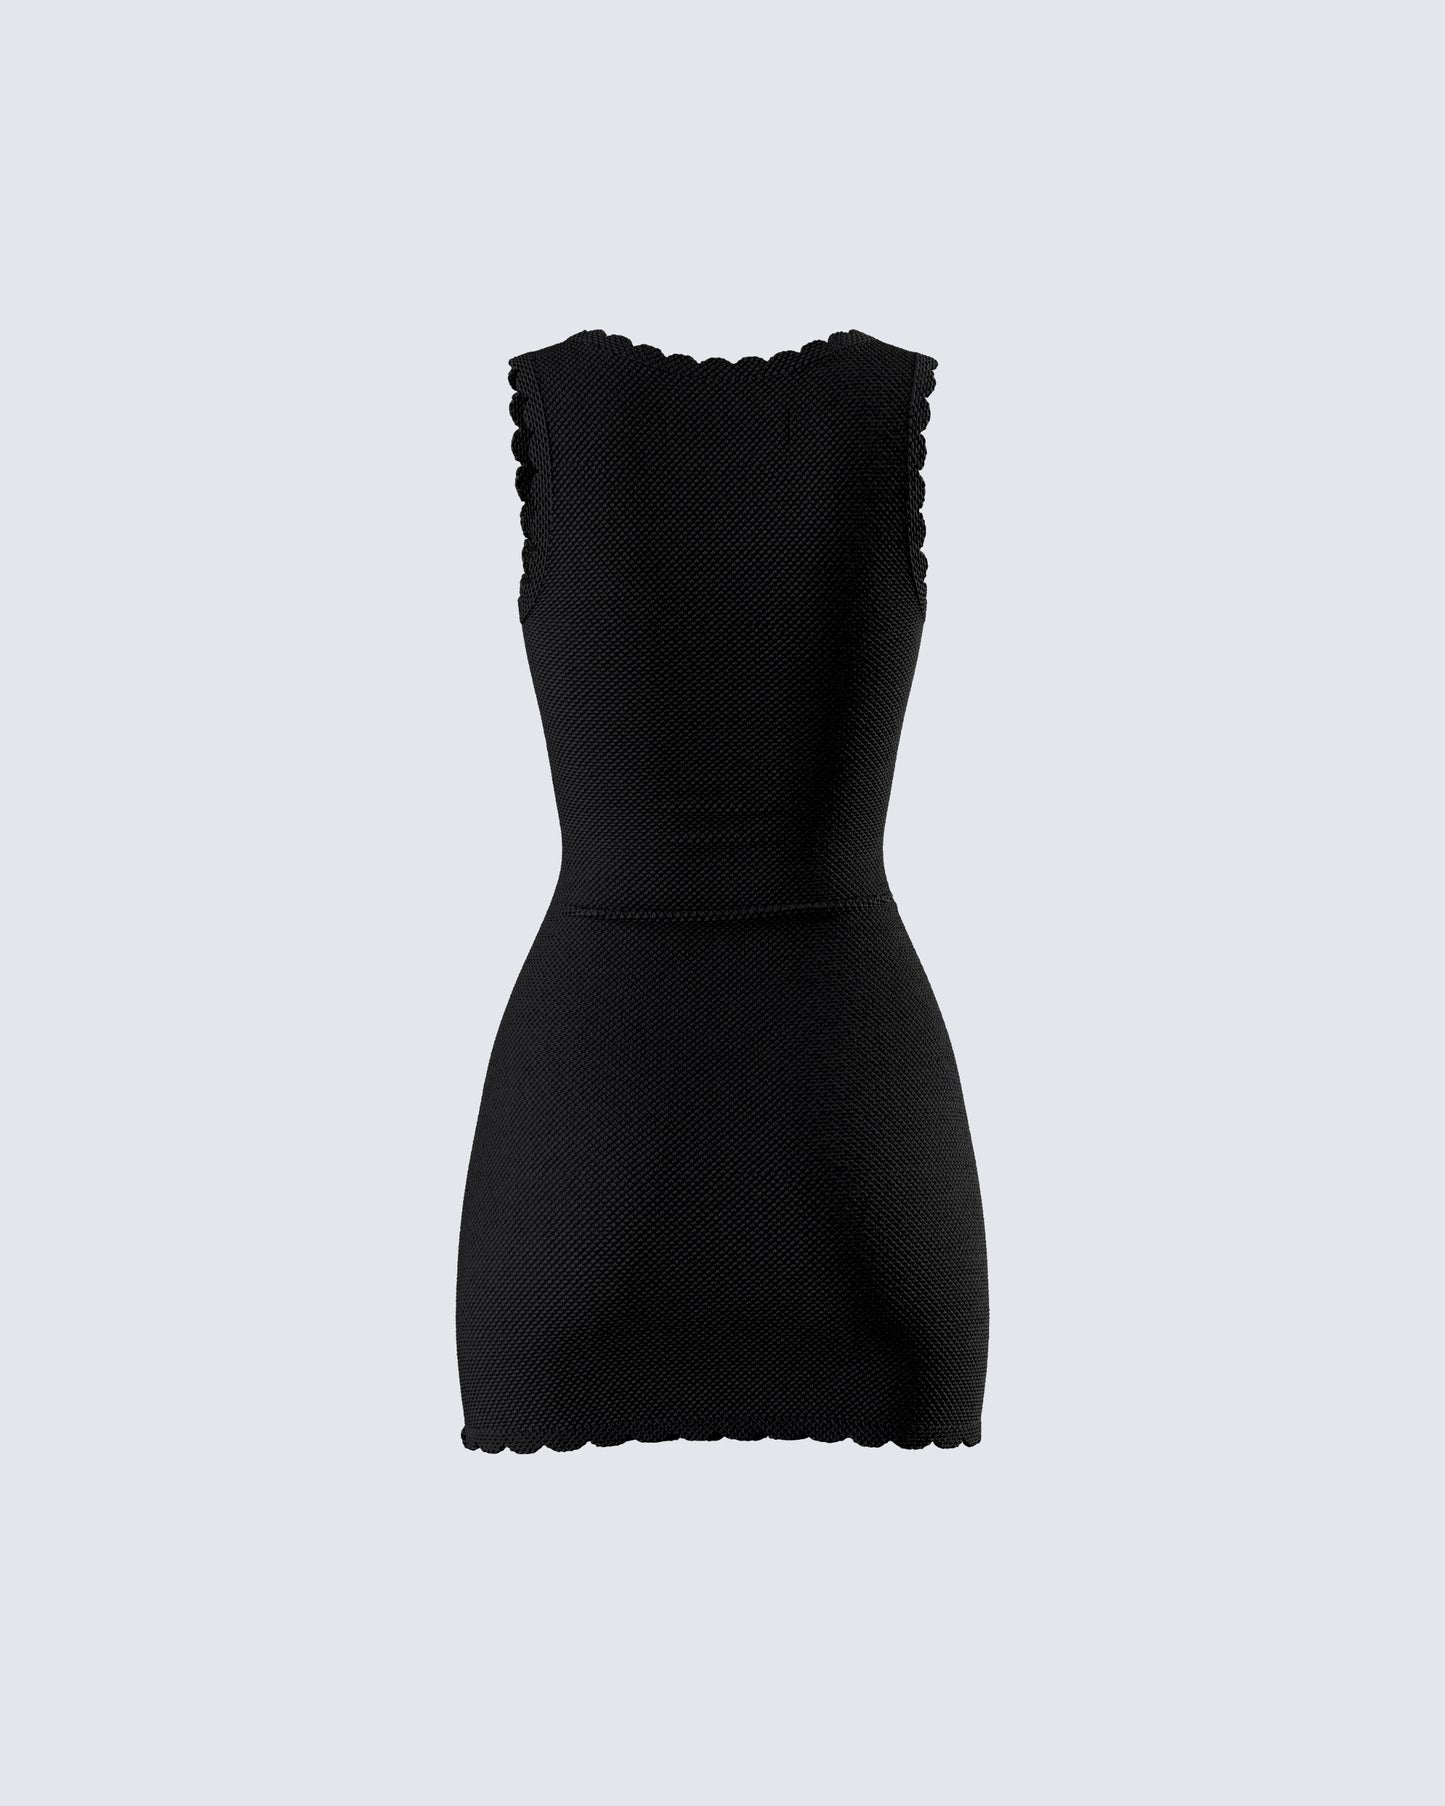 Evianna Black Rosette Mini Dress